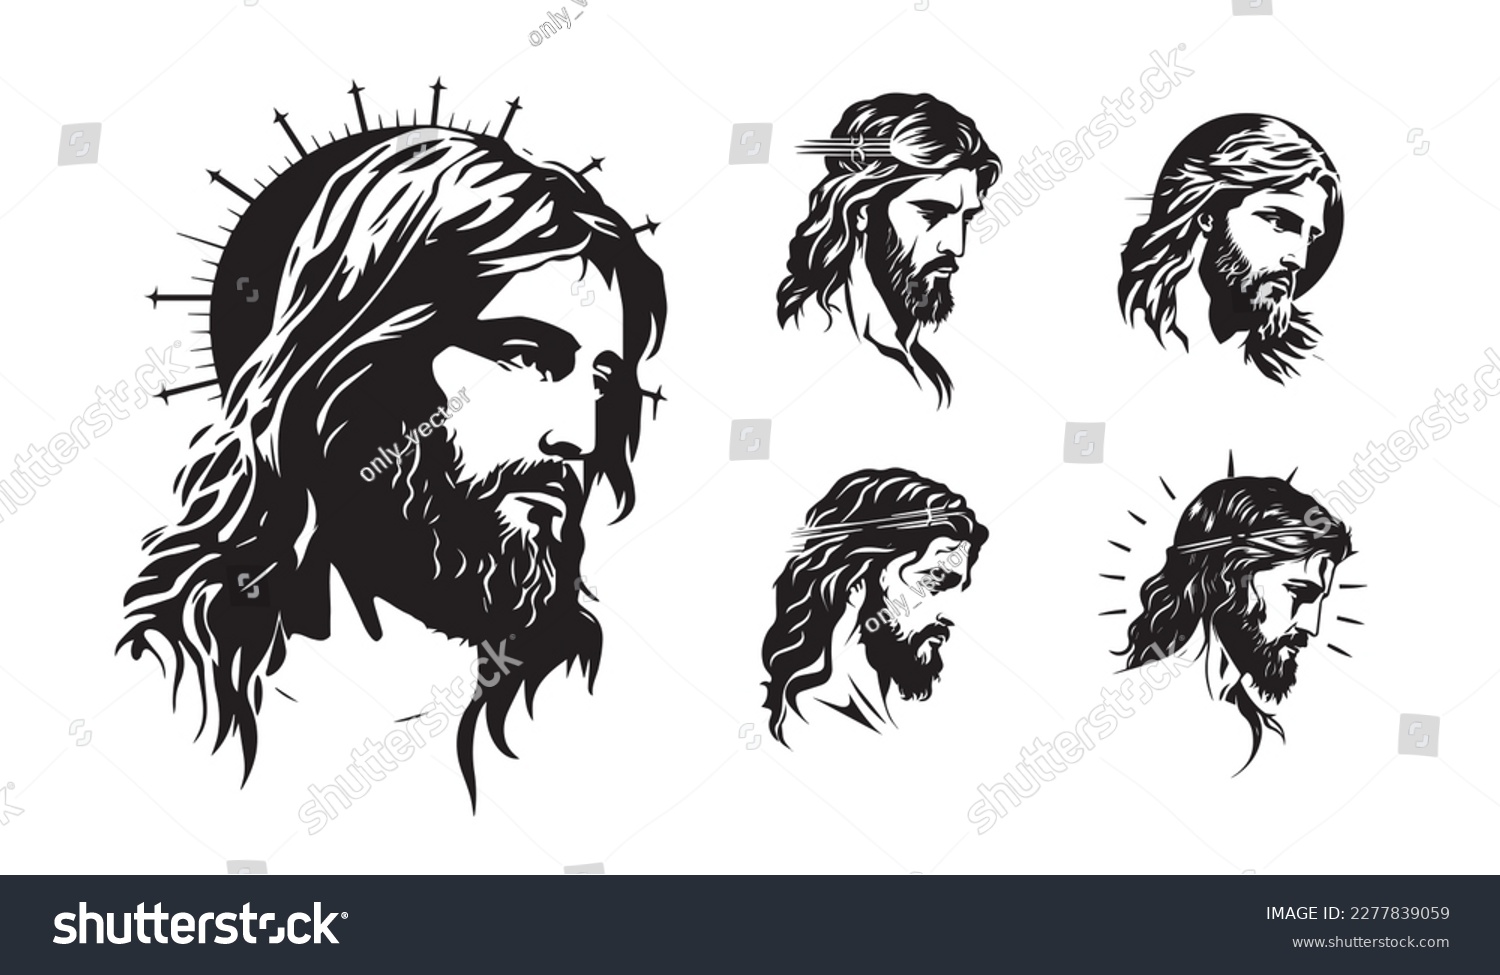 SVG of Jesus Christ. Hand drawn vector illustration. Black silhouette svg of Jesus, laser cutting cnc. svg